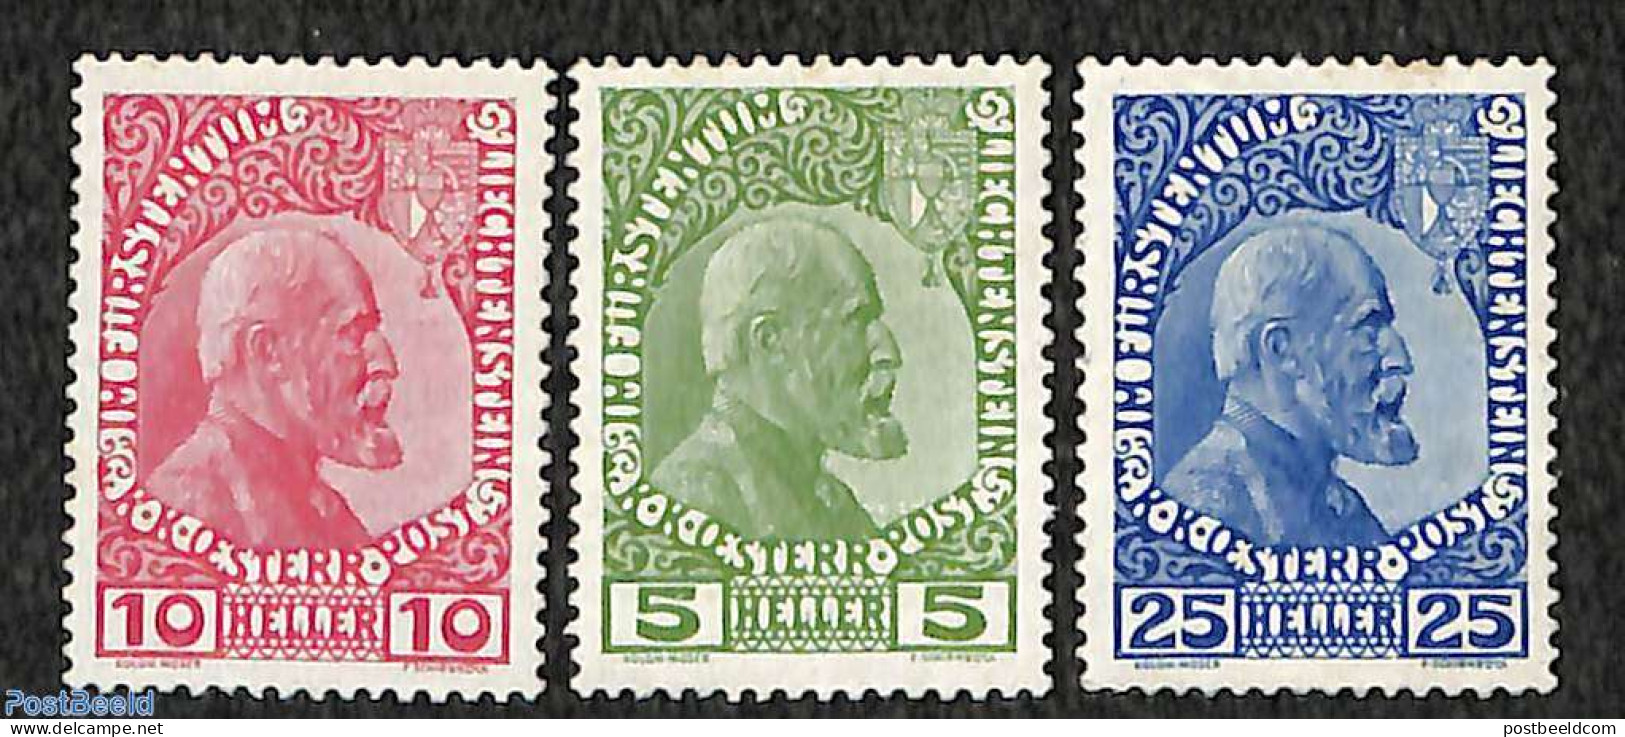 Liechtenstein 1912 Johann II 3v, Coated Paper, Mint NH, History - Kings & Queens (Royalty) - Ungebraucht